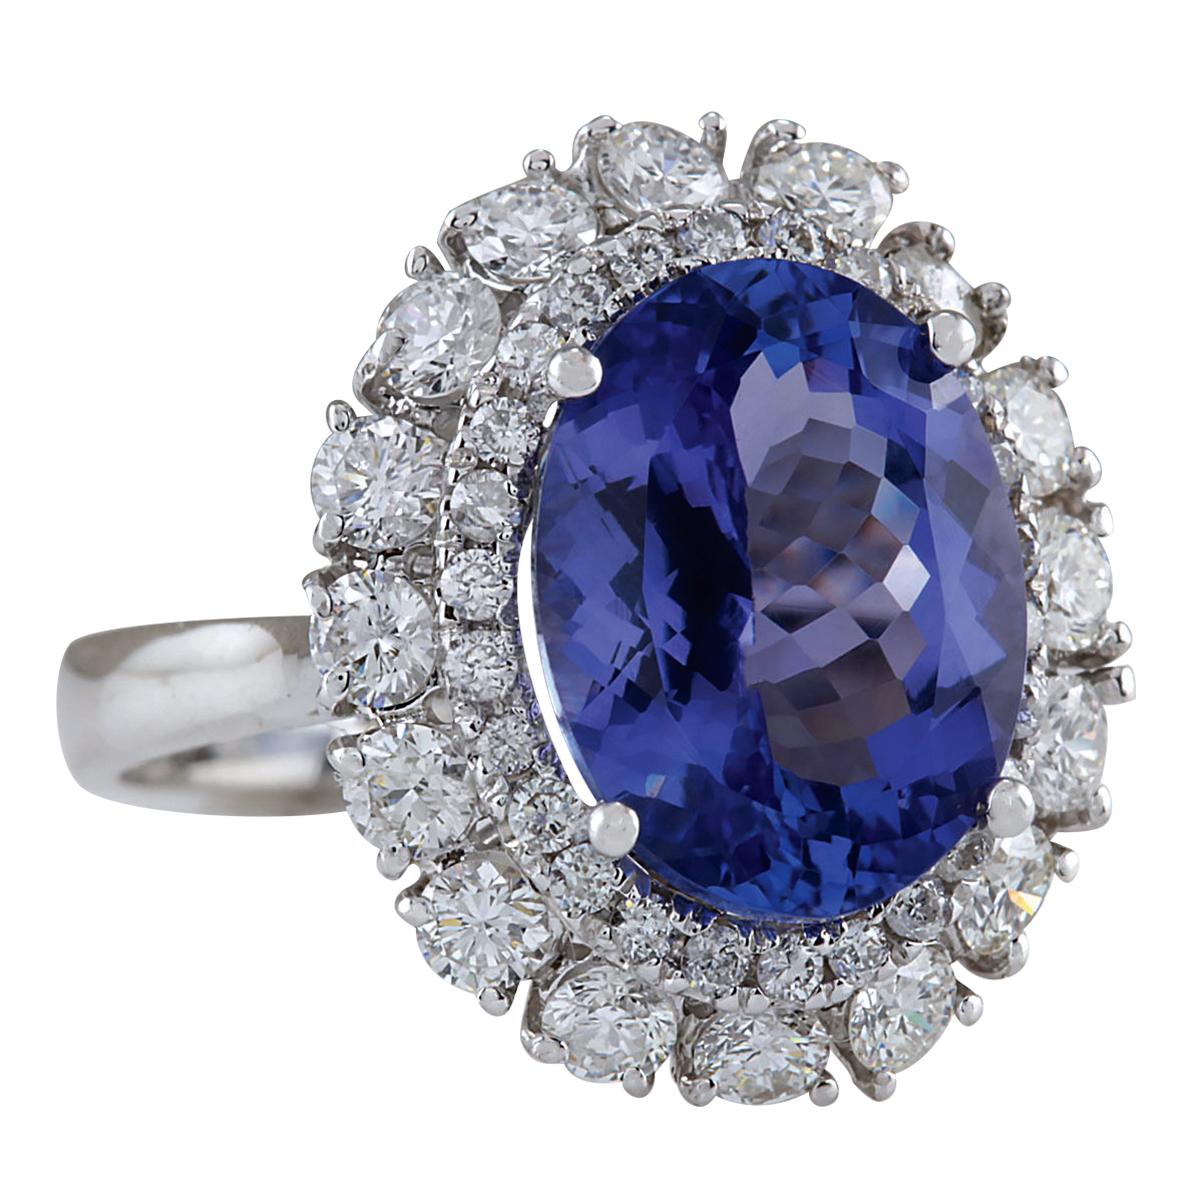 6.62 Carat Tanzanite 14 Karat White Gold Diamond Ring
Stamped: 14K White Gold
Total Ring Weight: 5.5 Grams
Total  Tanzanite Weight is 5.12 Carat (Measures: 12.00x10.00 mm)
Color: Blue
Total  Diamond Weight is 1.50 Carat
Color: F-G, Clarity: